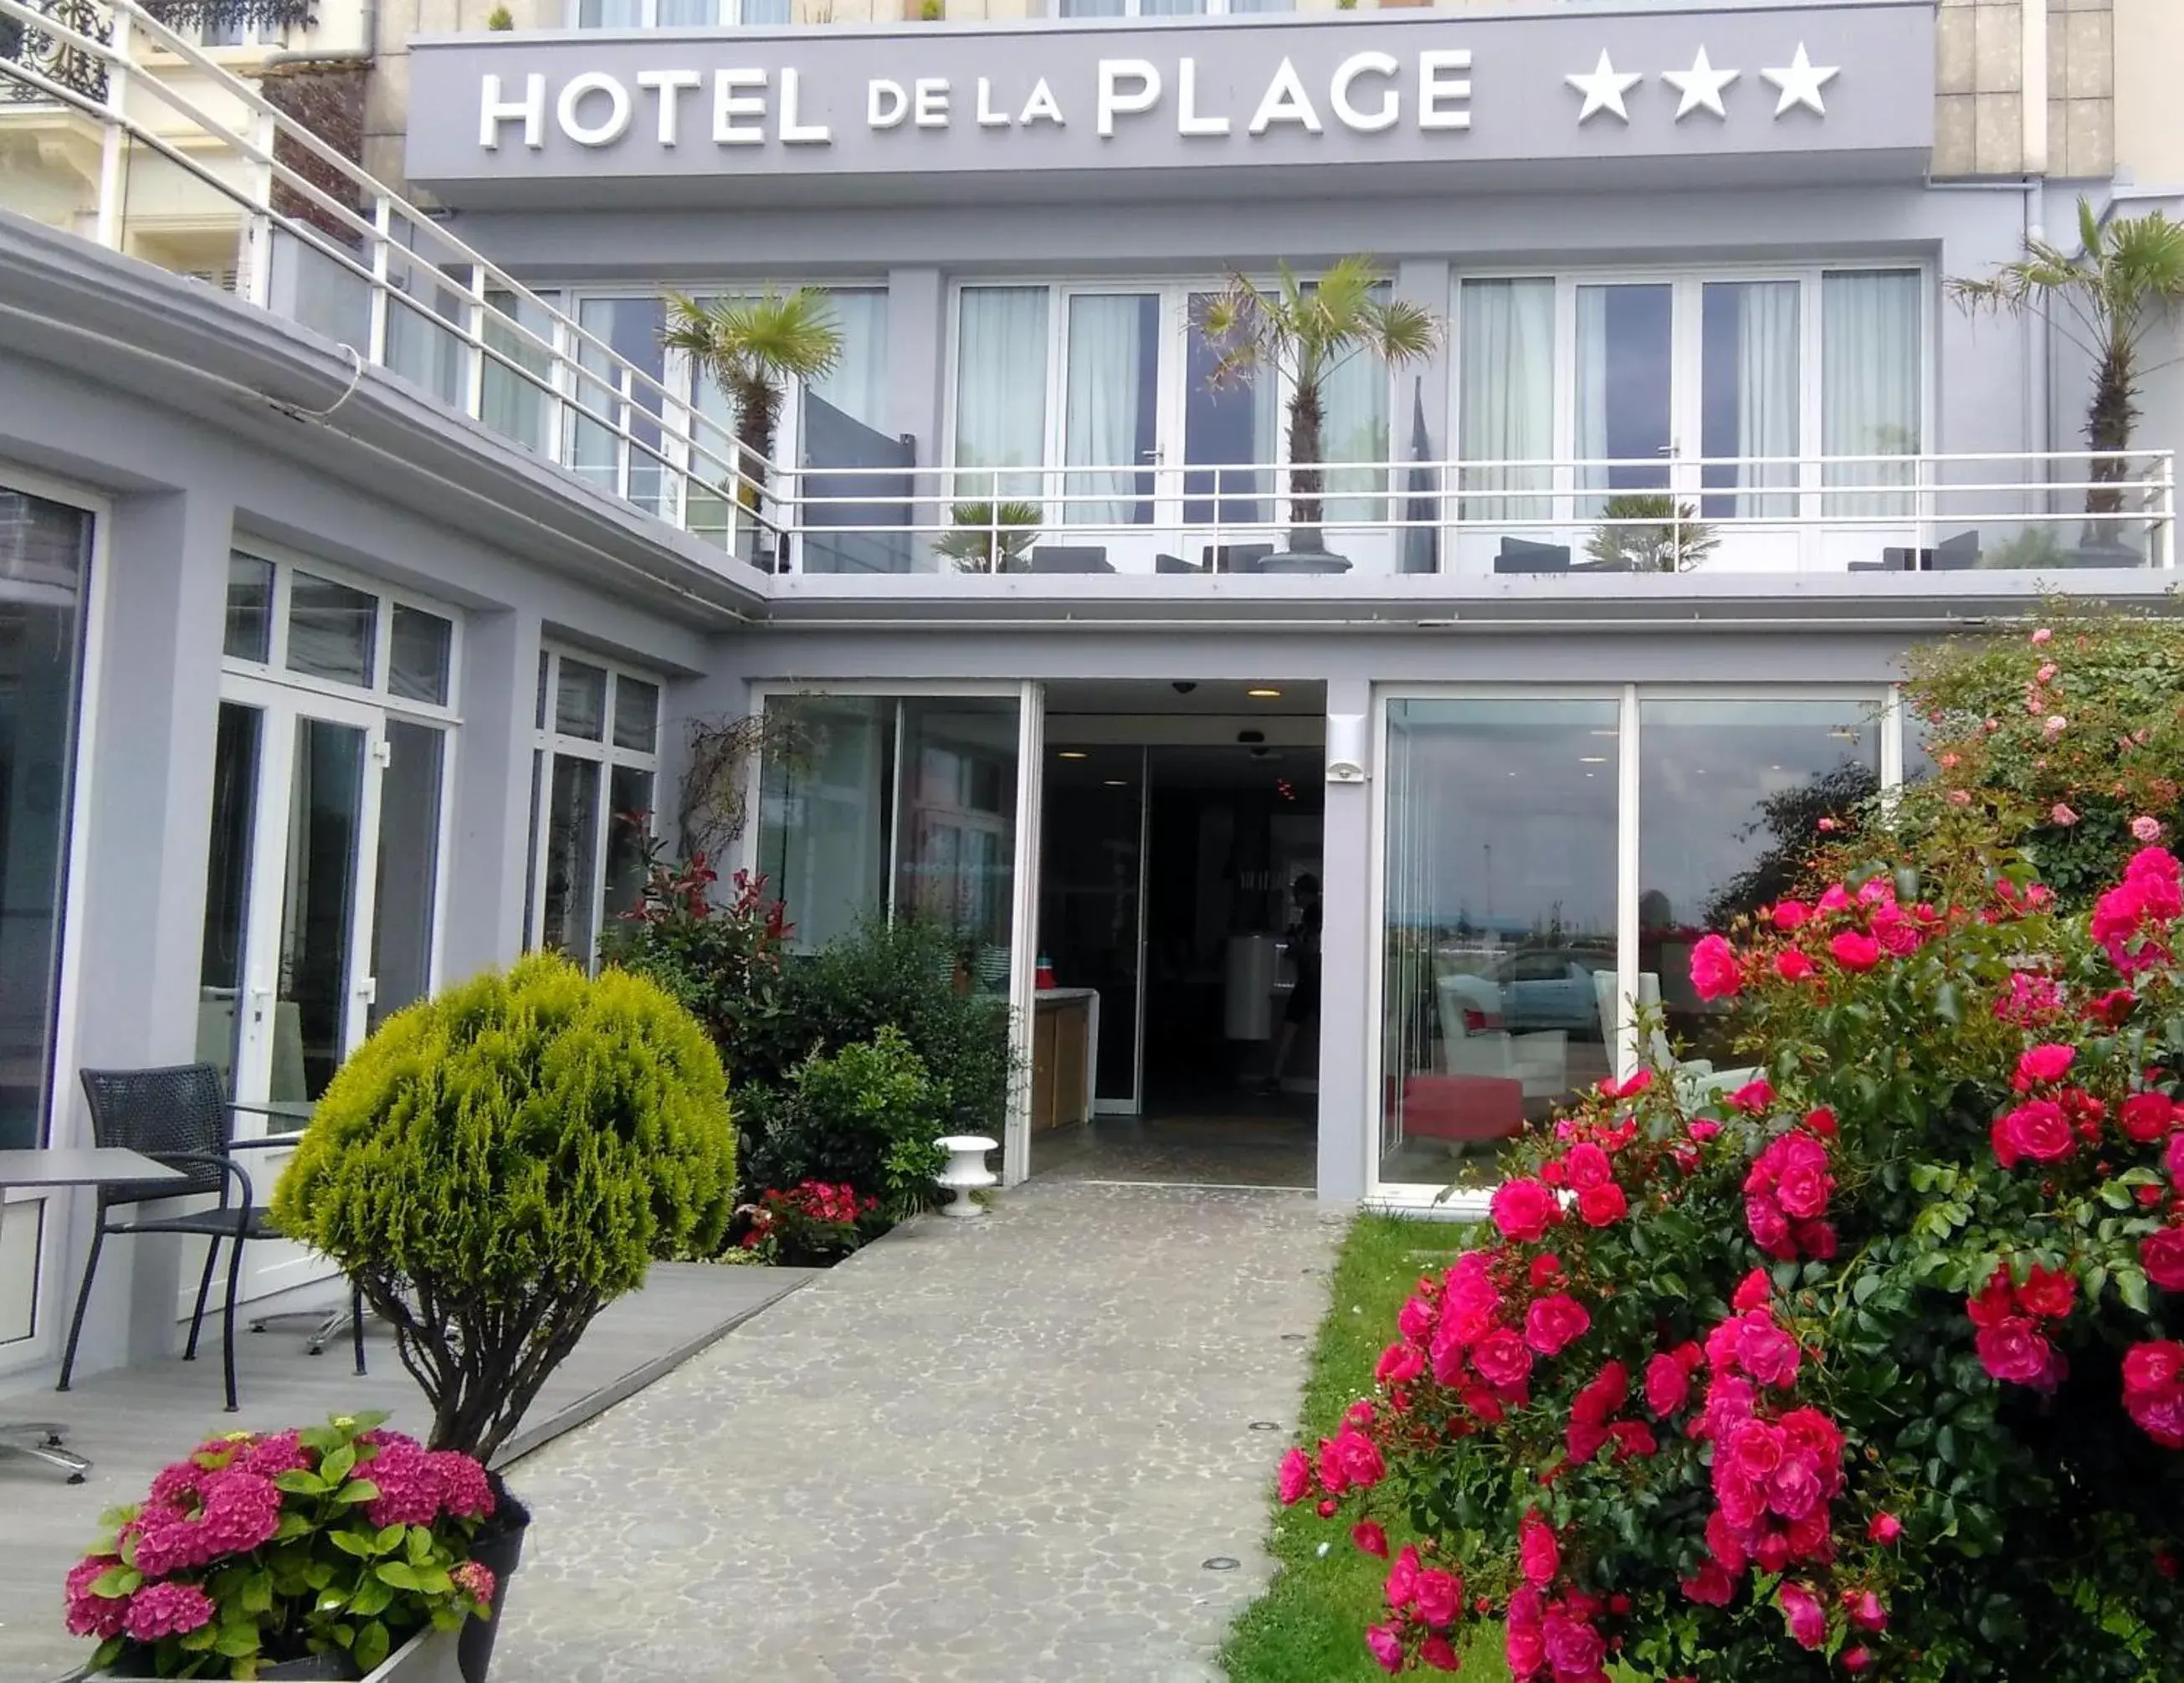 Facade/entrance, Patio/Outdoor Area in Hotel de la Plage